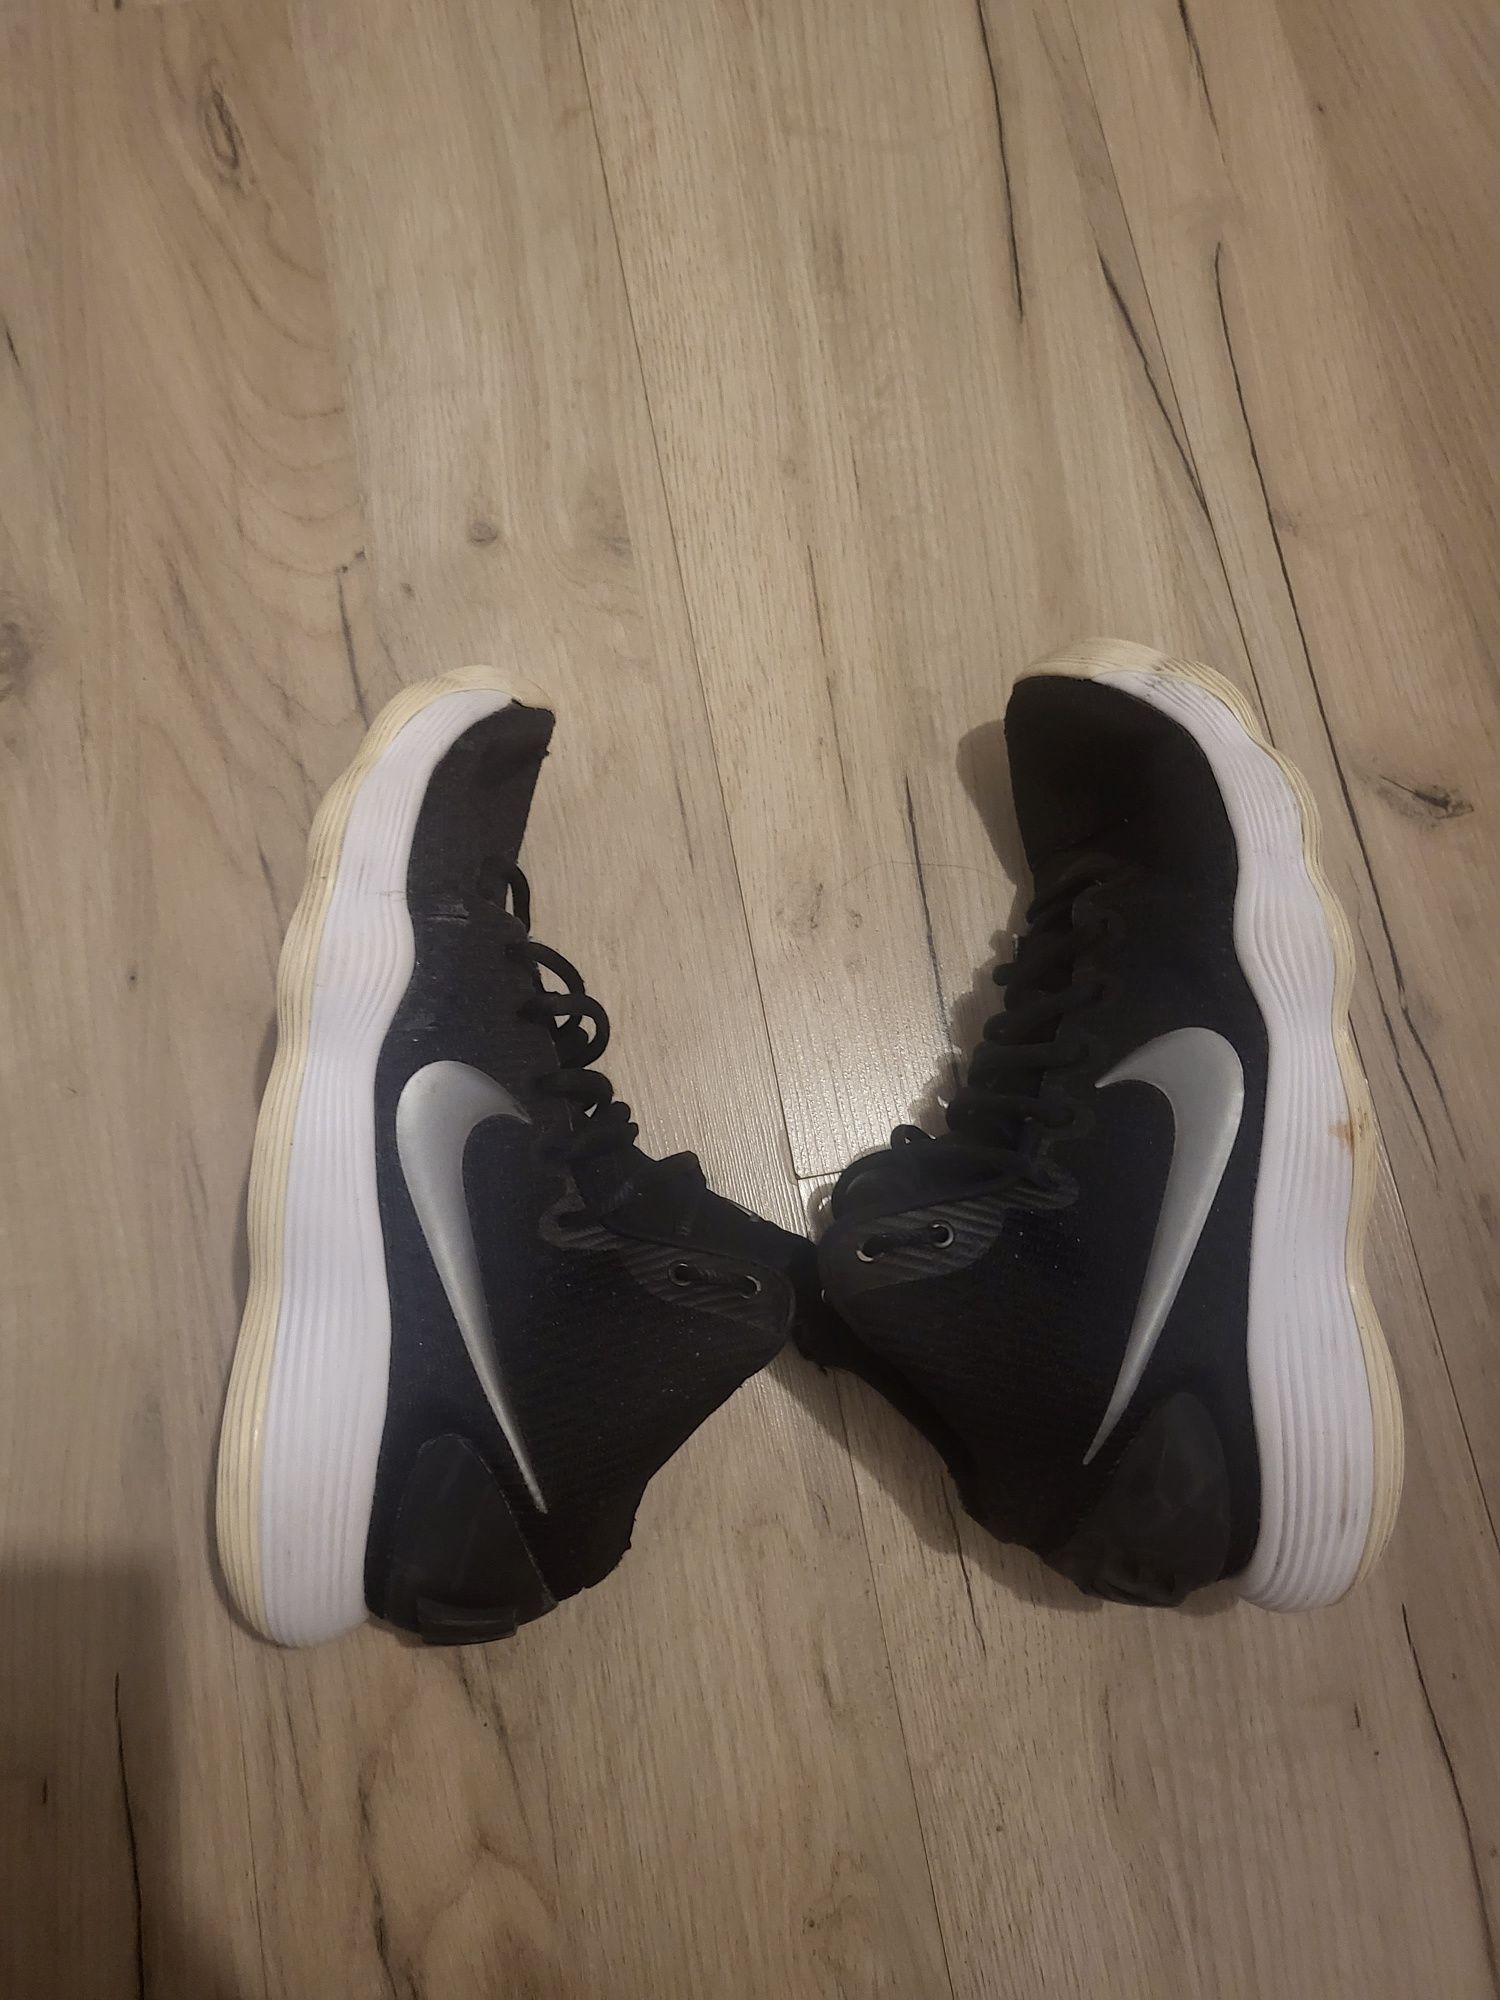 Buty do koszykówki Nike Hyperdunk rozm. 42,5